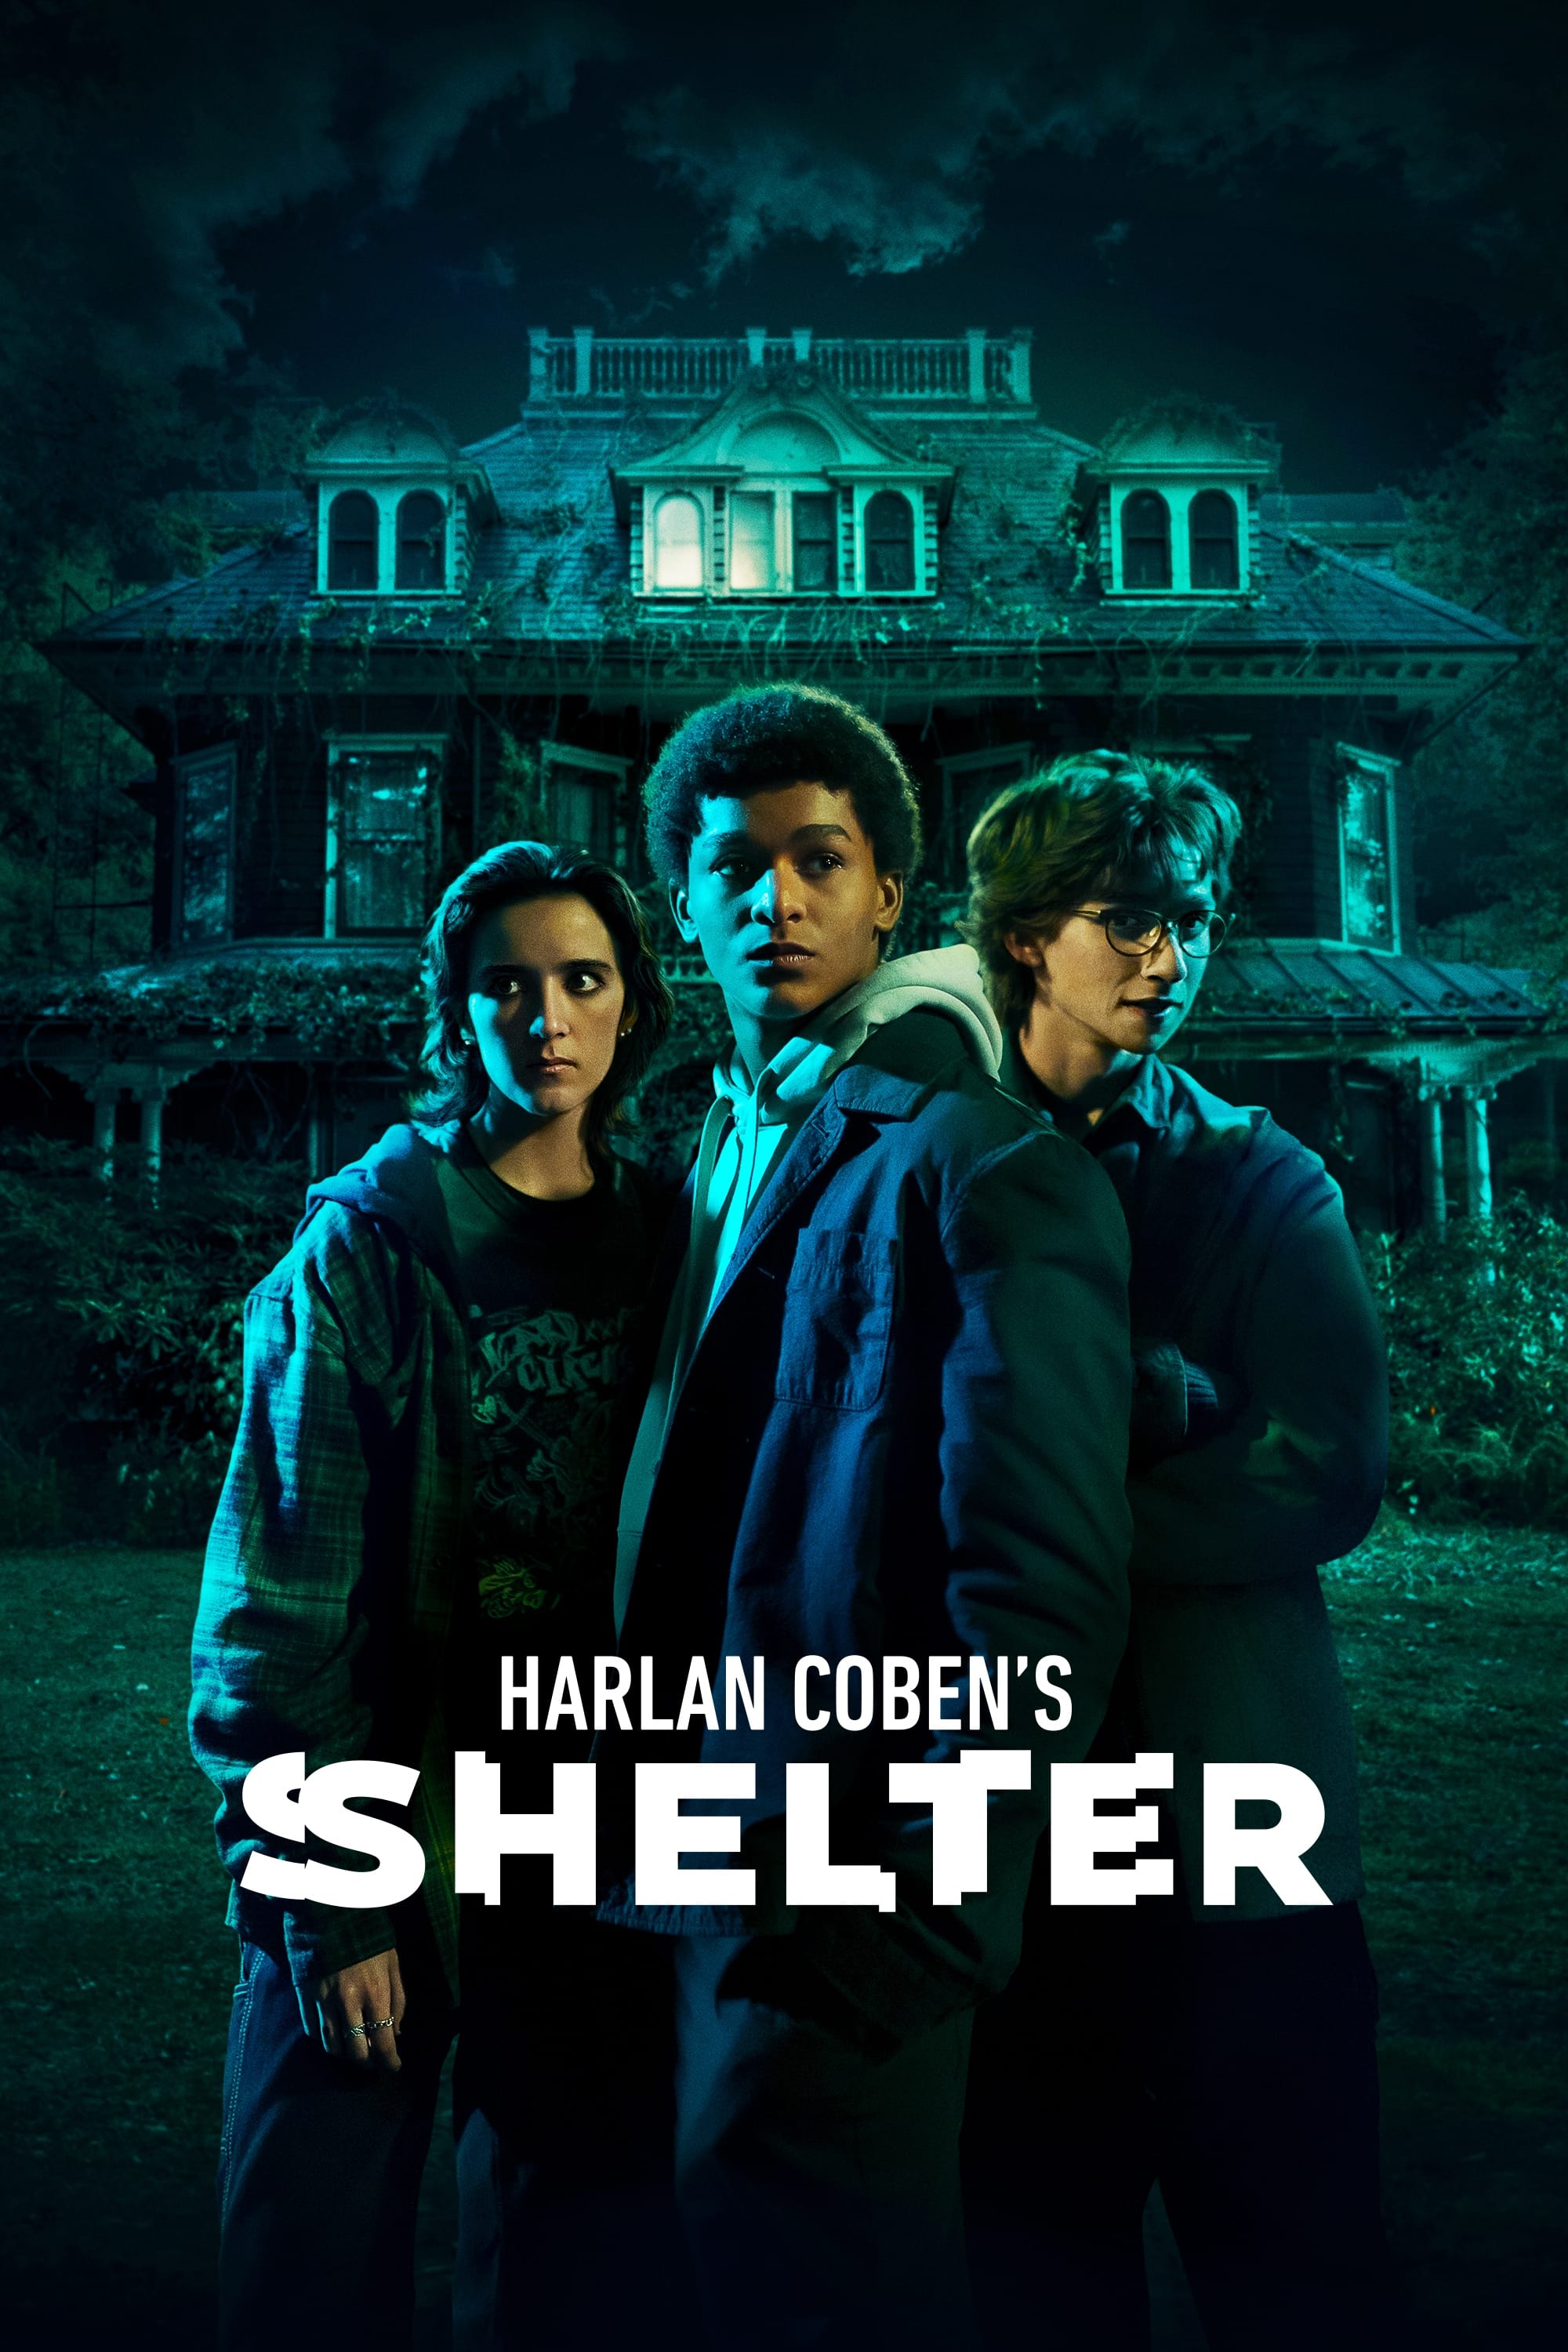 Harlan Coben's Shelter TV Shows About Based On Novel Or Book